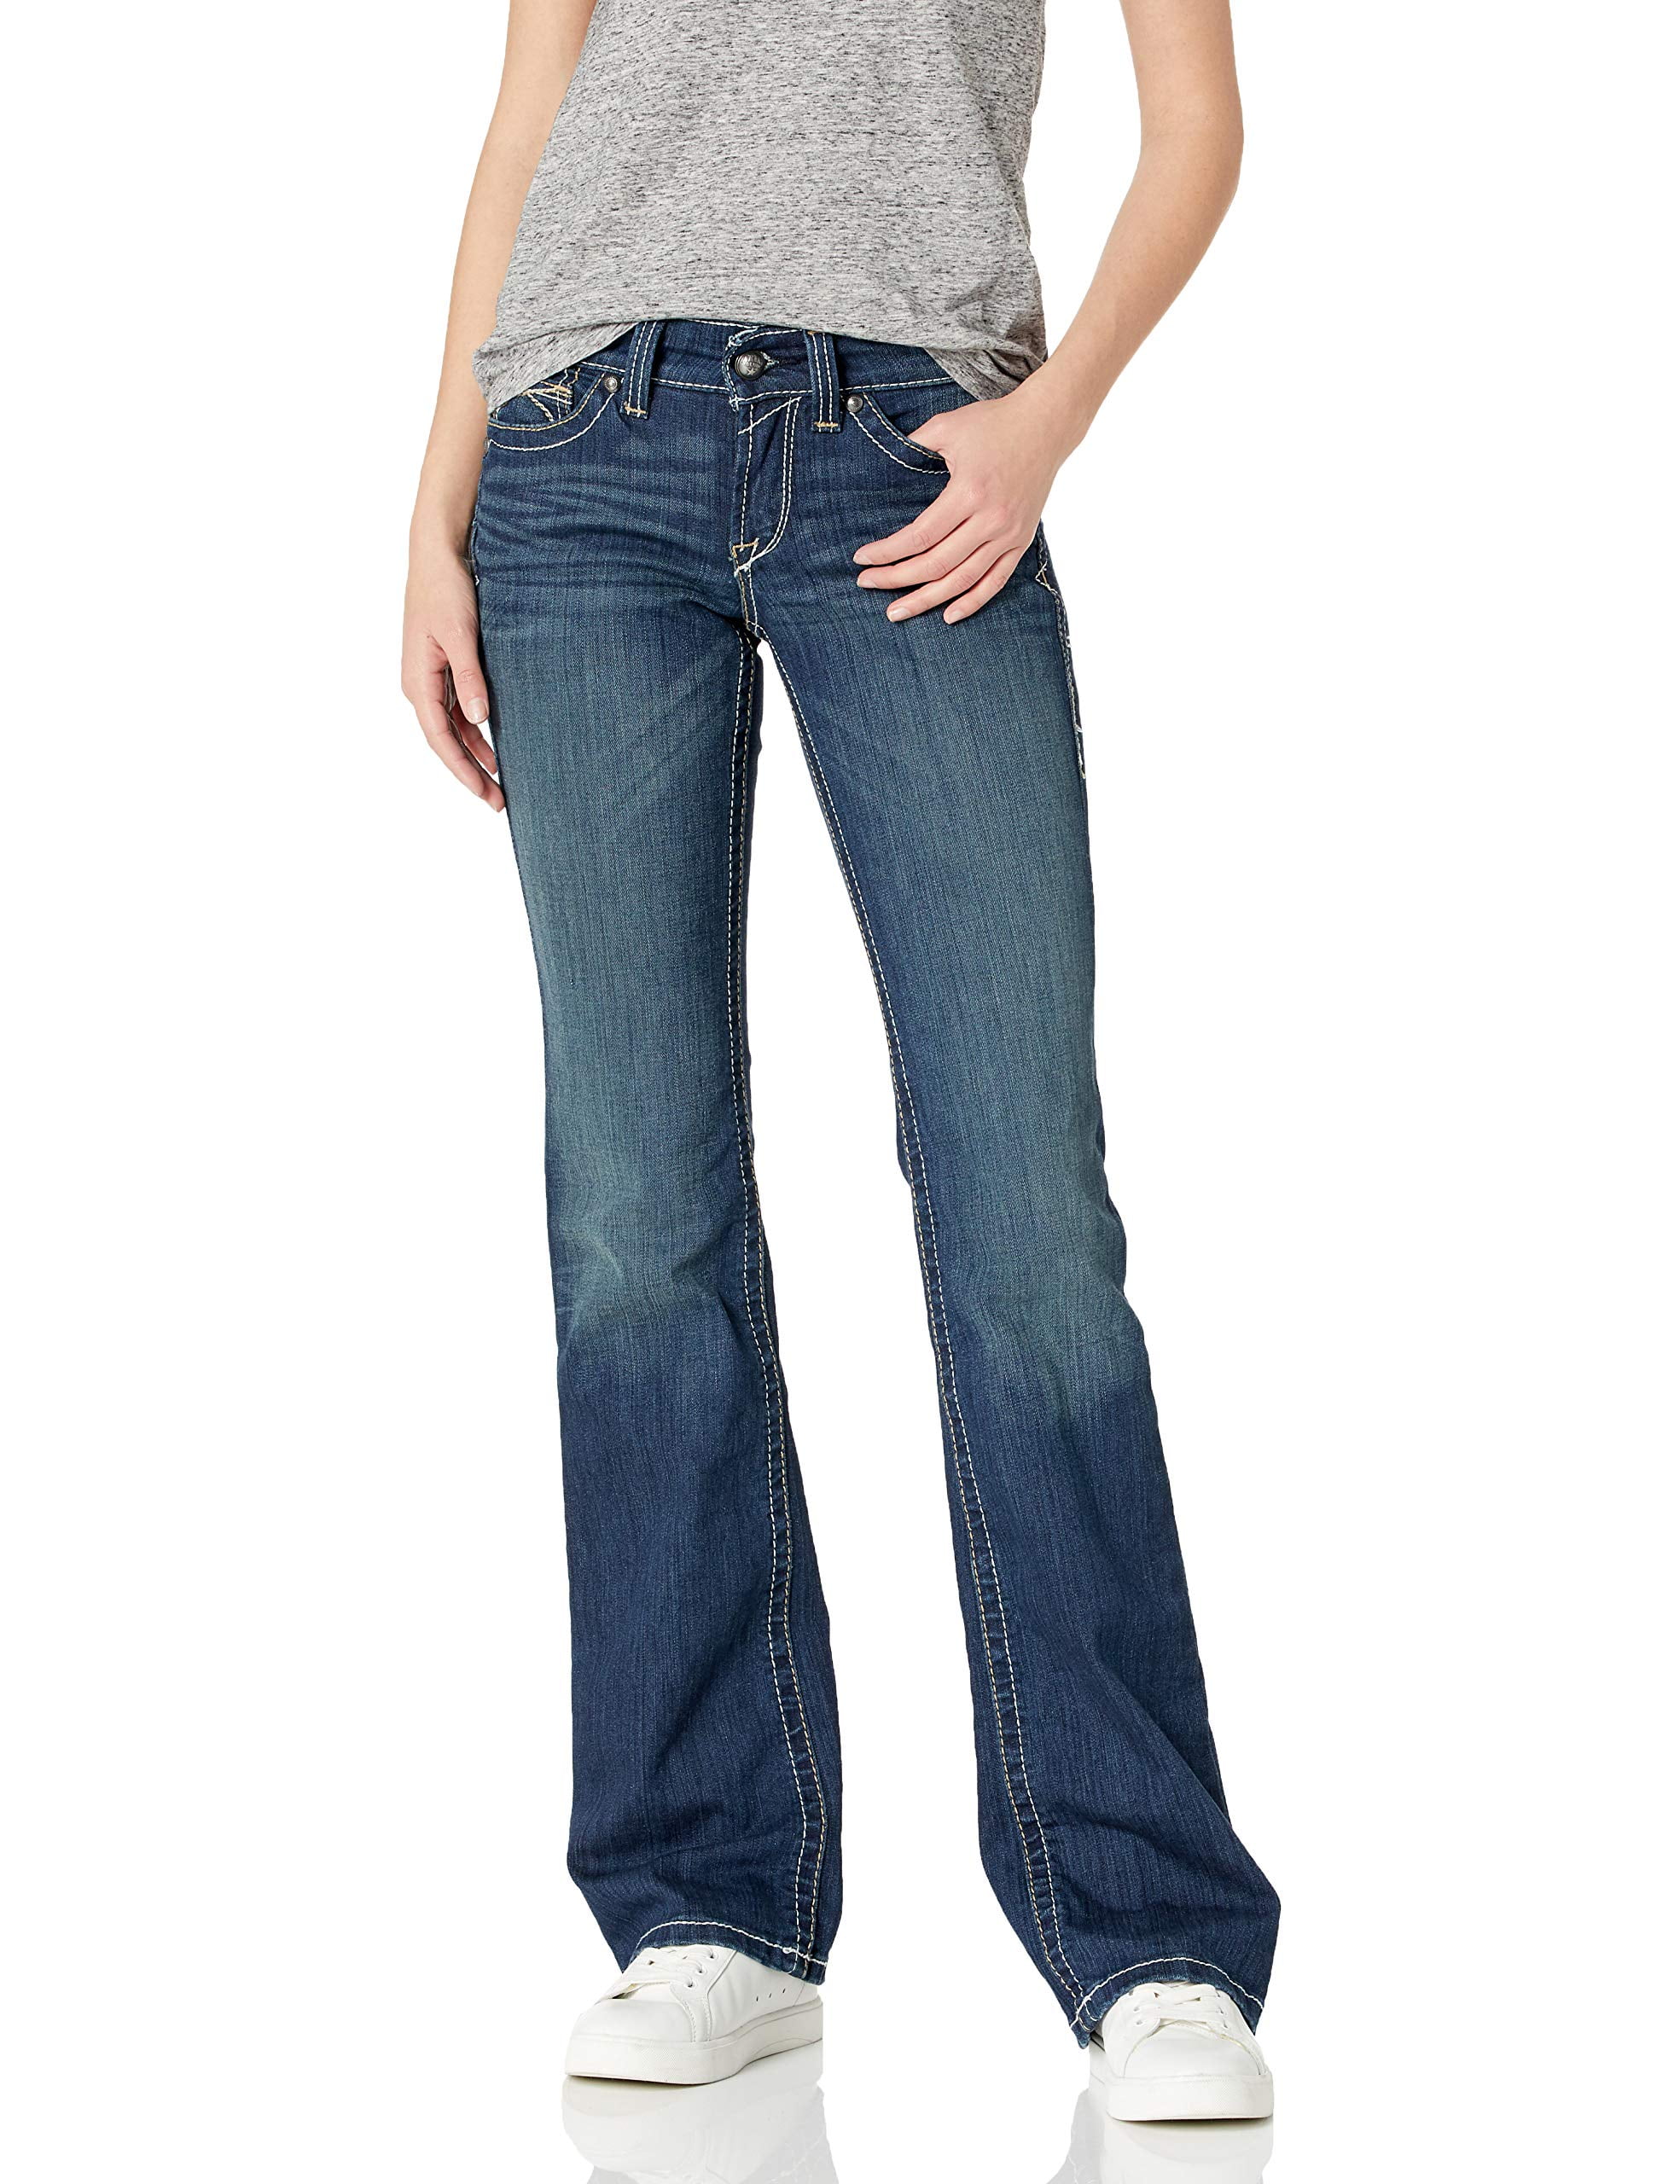 Ariat Women's R.E.A.L. Mid Rise Stretch Whipstitch Boot Cut Jeans (33 ...